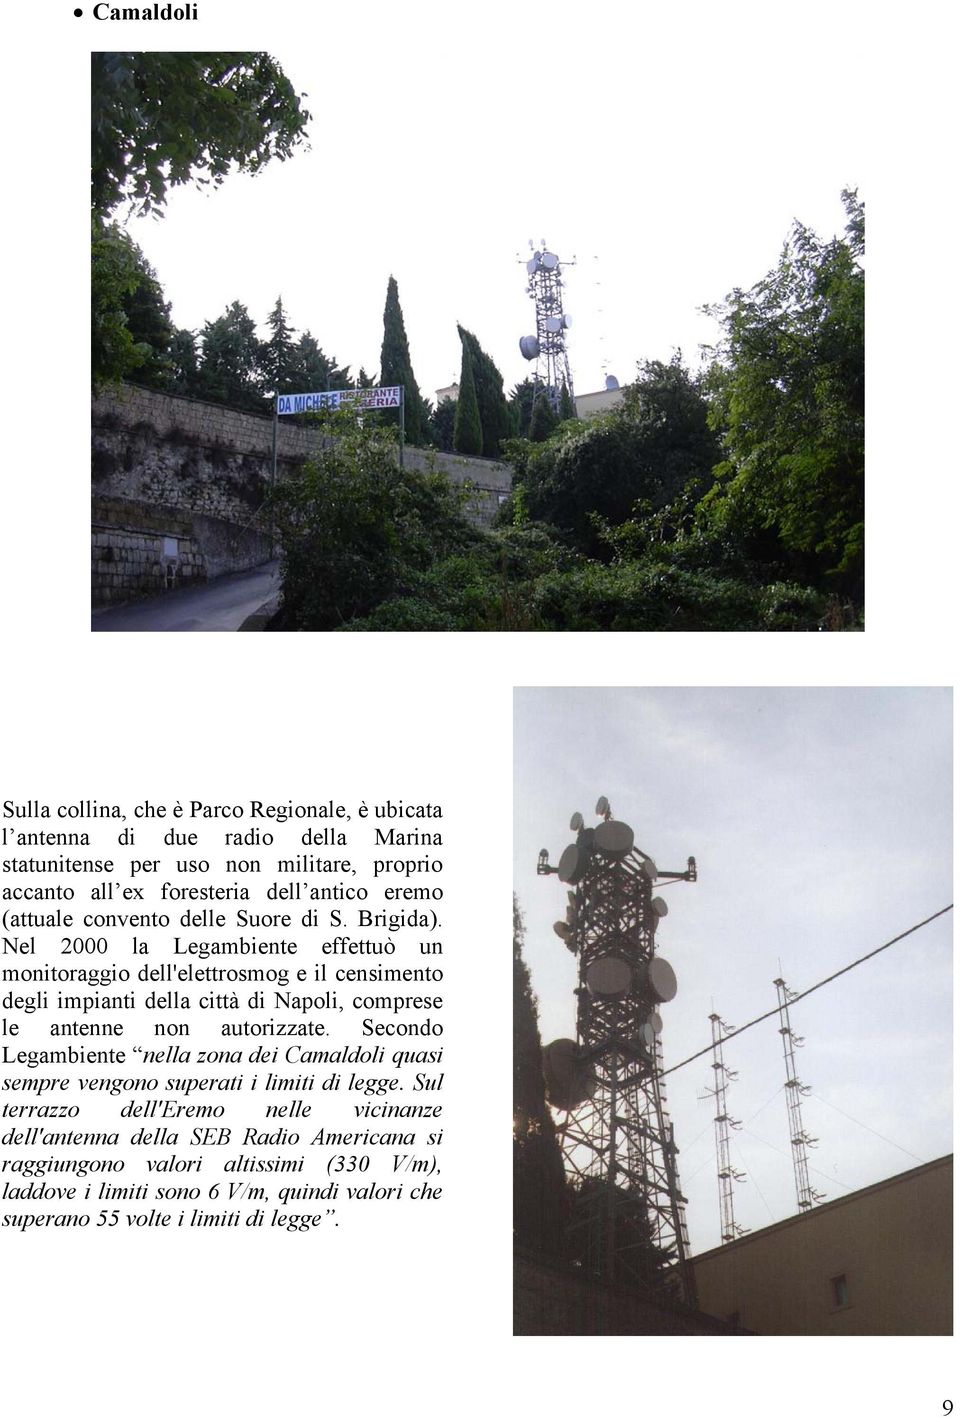 Nel 2000 la Legambiente effettuò un monitoraggio dell'elettrosmog e il censimento degli impianti della città di Napoli, comprese le antenne non autorizzate.